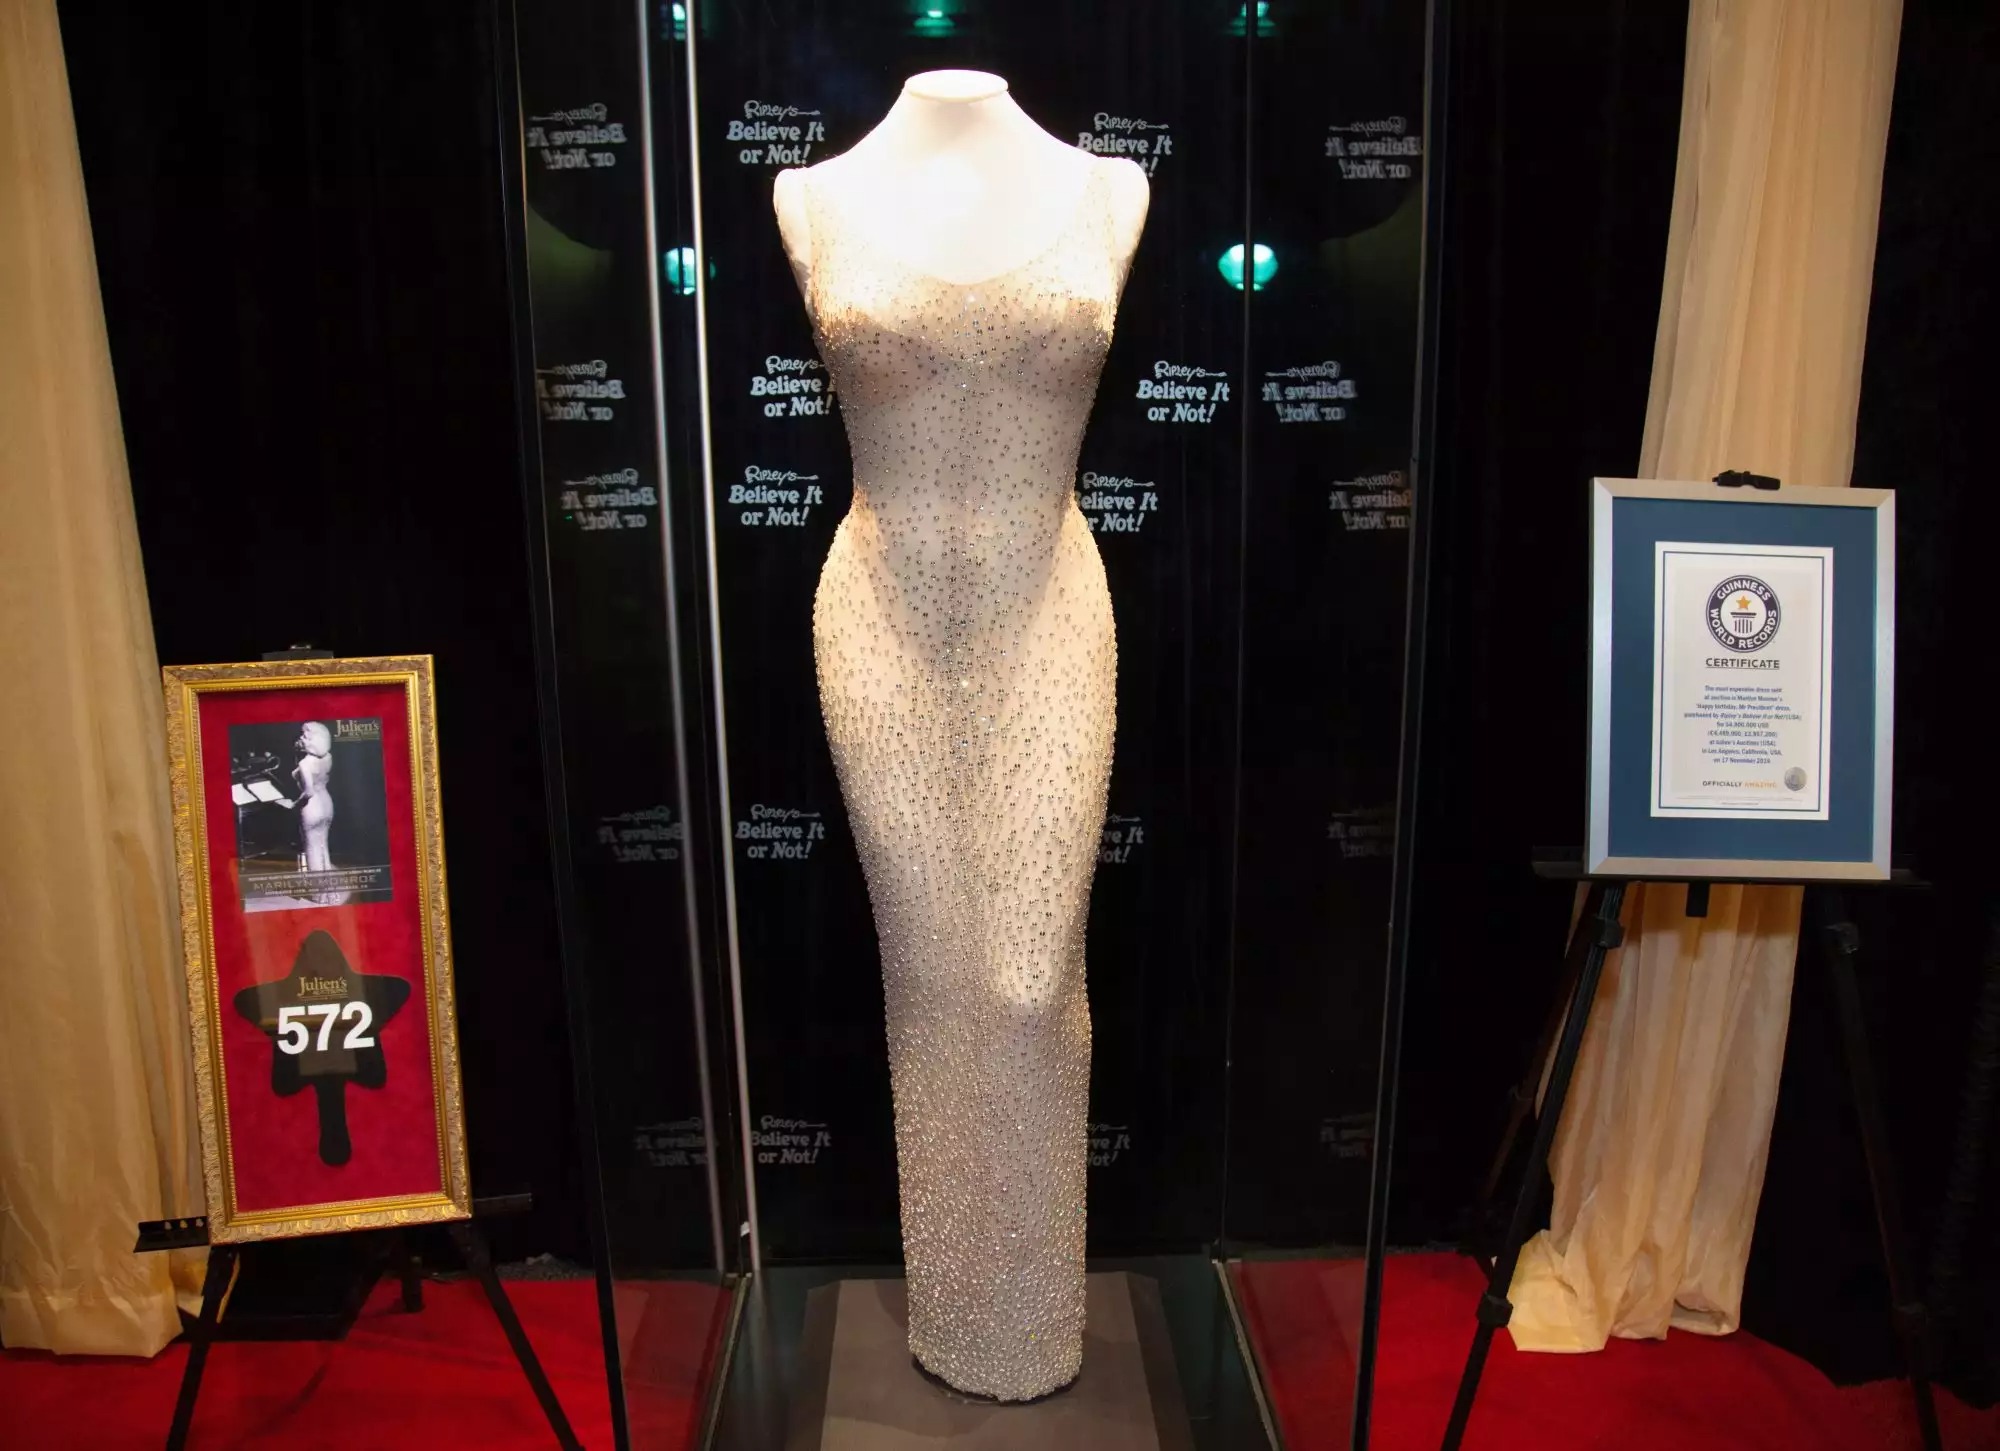 vay marilyn monrose credit Liliane Lathan - Chiếc váy 60 năm tuổi của Marilyn Monroe đã hỏng, ai tiếp tay cho Kim Kardashian?